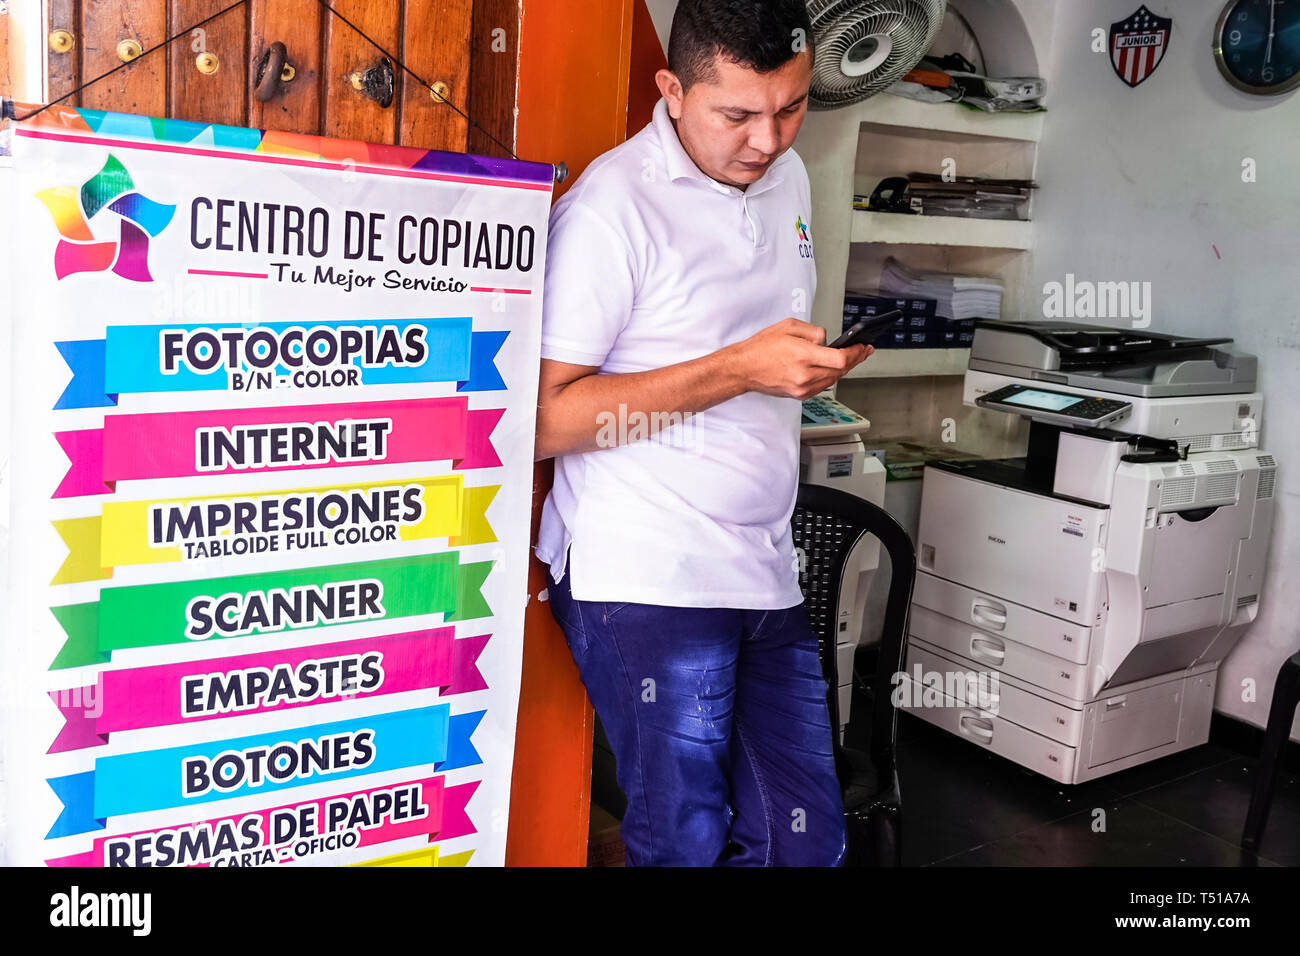 Cartagena Kolumbien, Druckerei Fotokopierer, Schild, spanische Sprache, Einwohner von Hispanic, Männer männlich, Kopierzentrum, COL190123086 Stockfoto